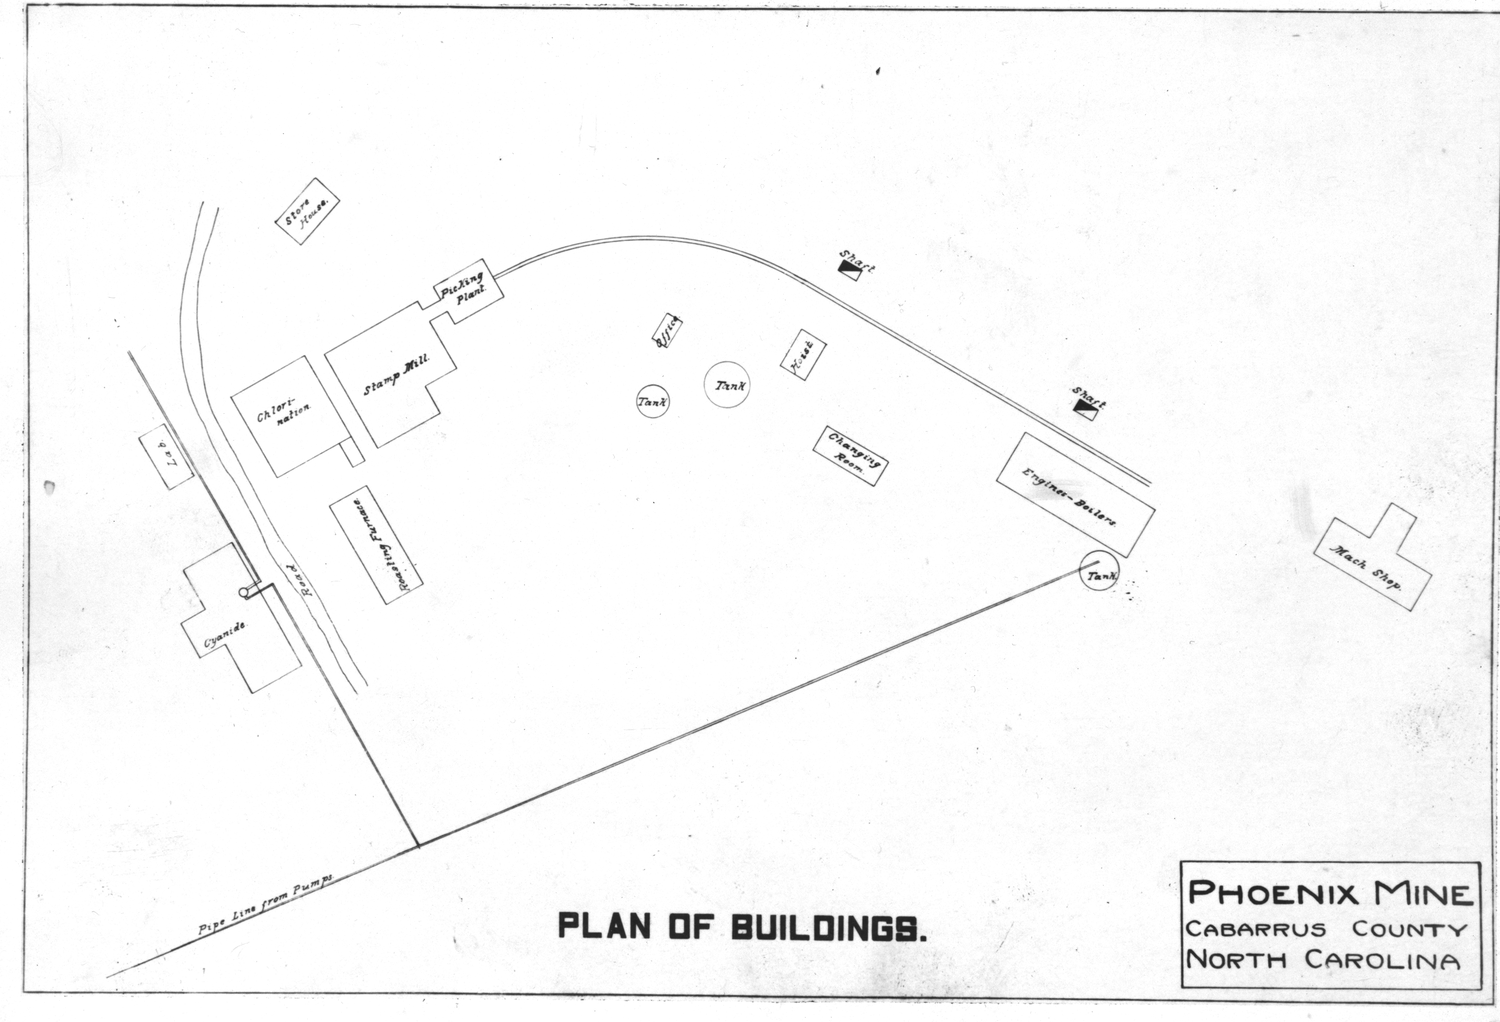 Plan of Buildings